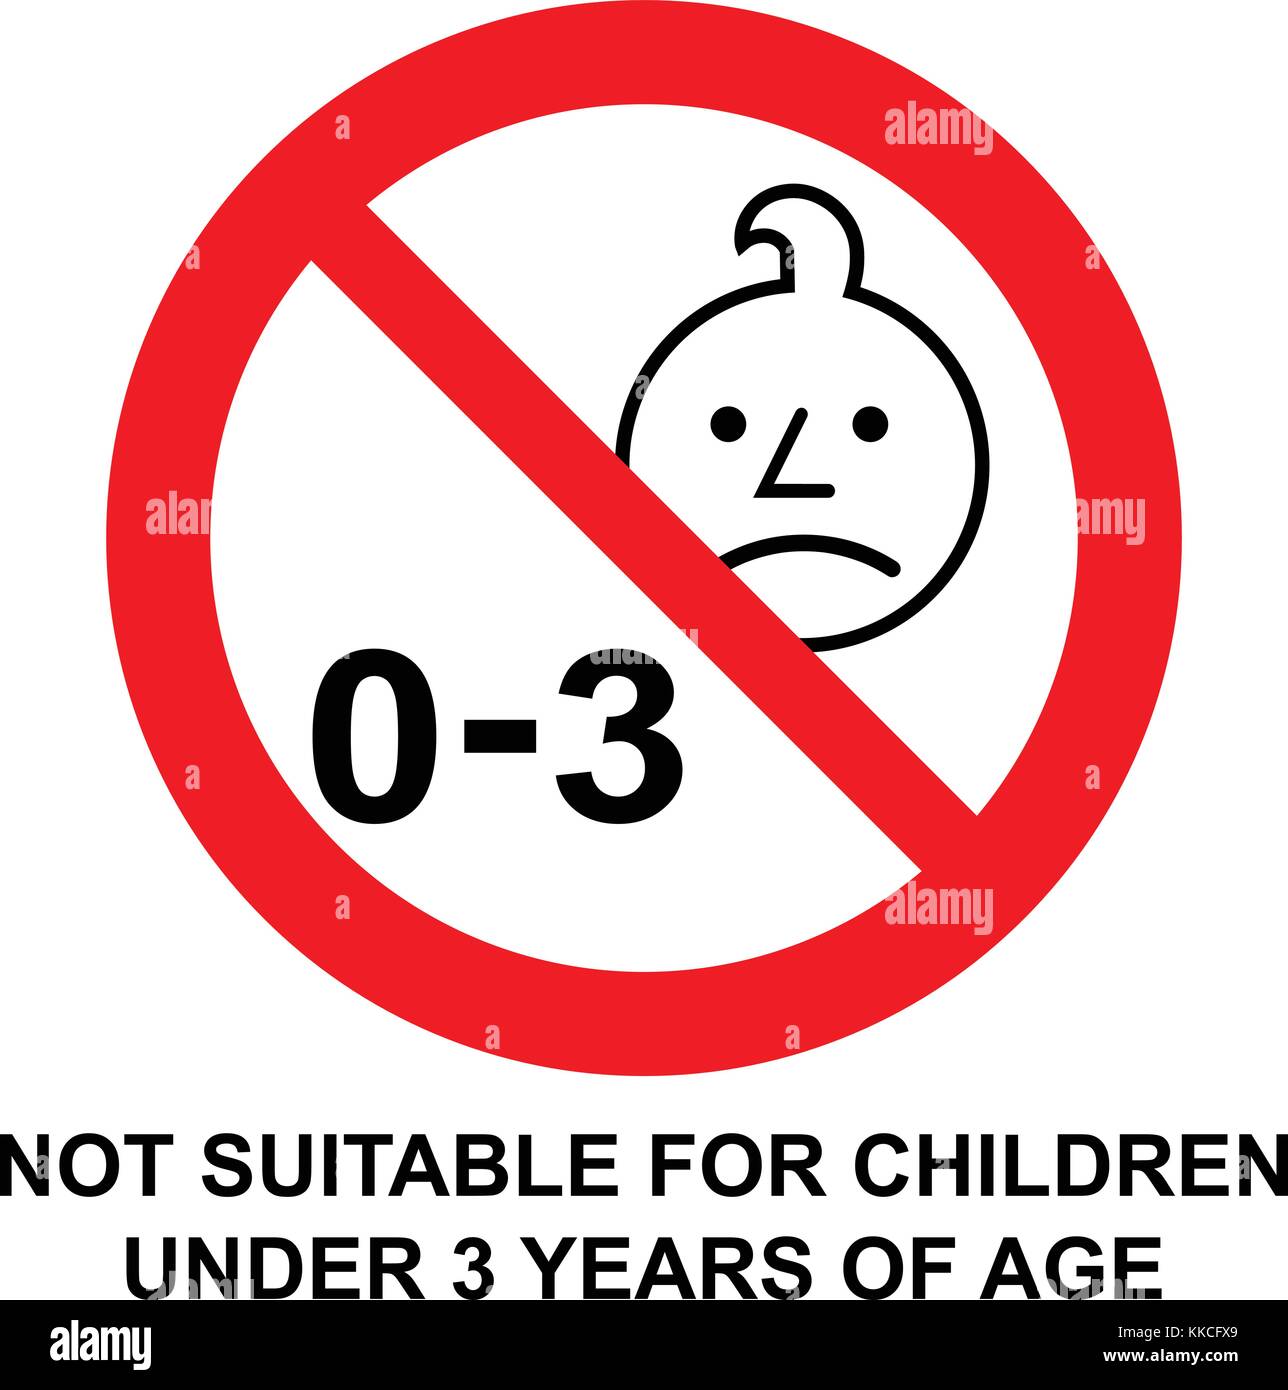 Nicht für Kinder unter 3 Jahren geeignet, Verbotsschild. Silhouette eines Kindes in rotem Kreis mit 0-3 Symbol, Warnzeichen, Vektorgrafik. Stock Vektor